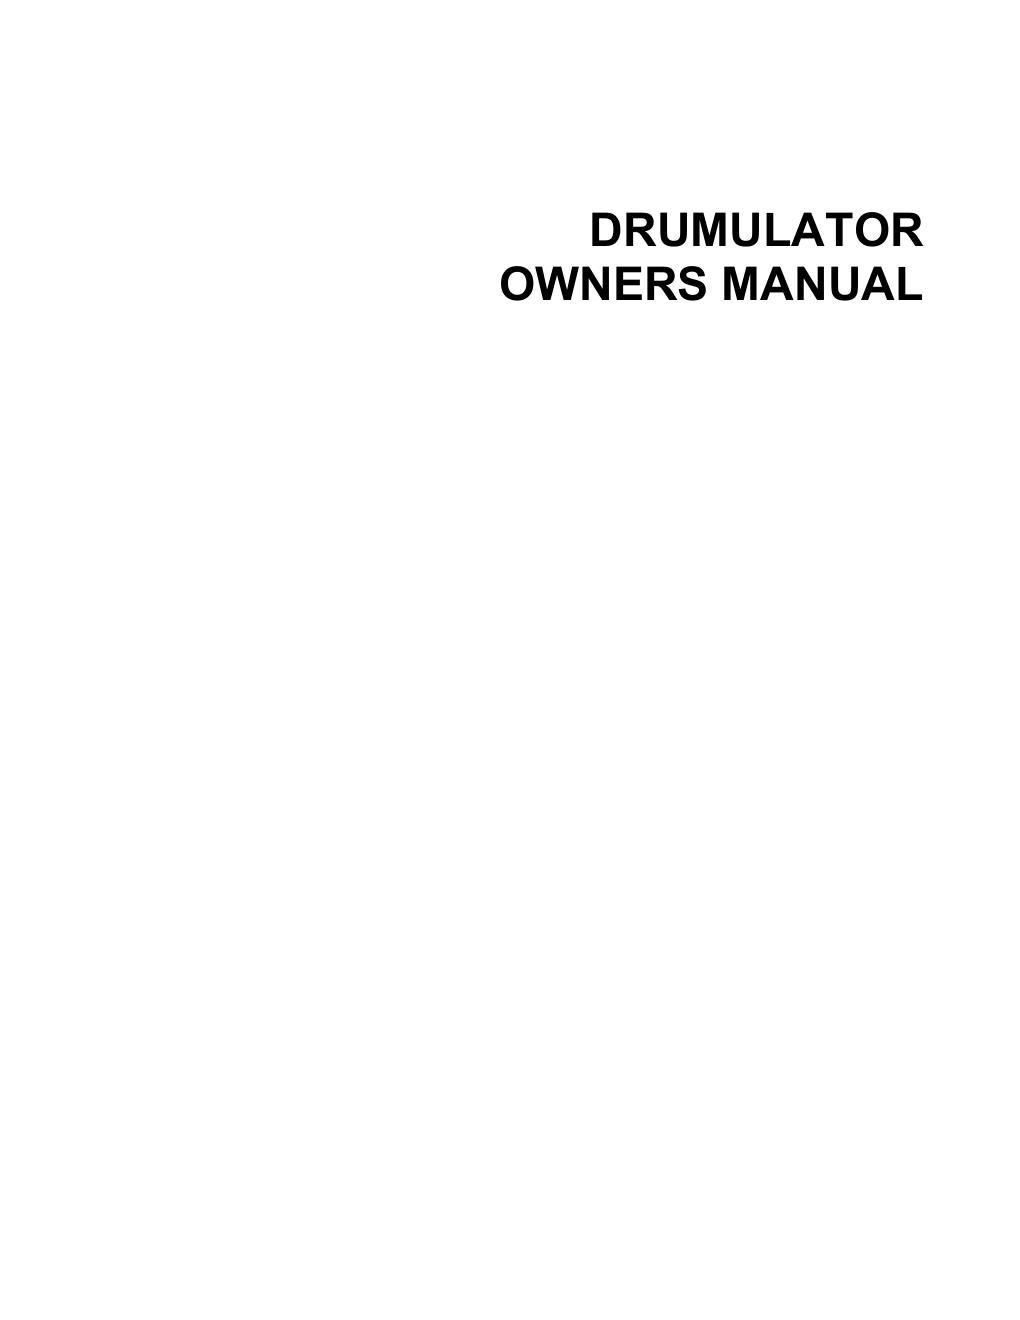 emu drumulator owners manual 1981